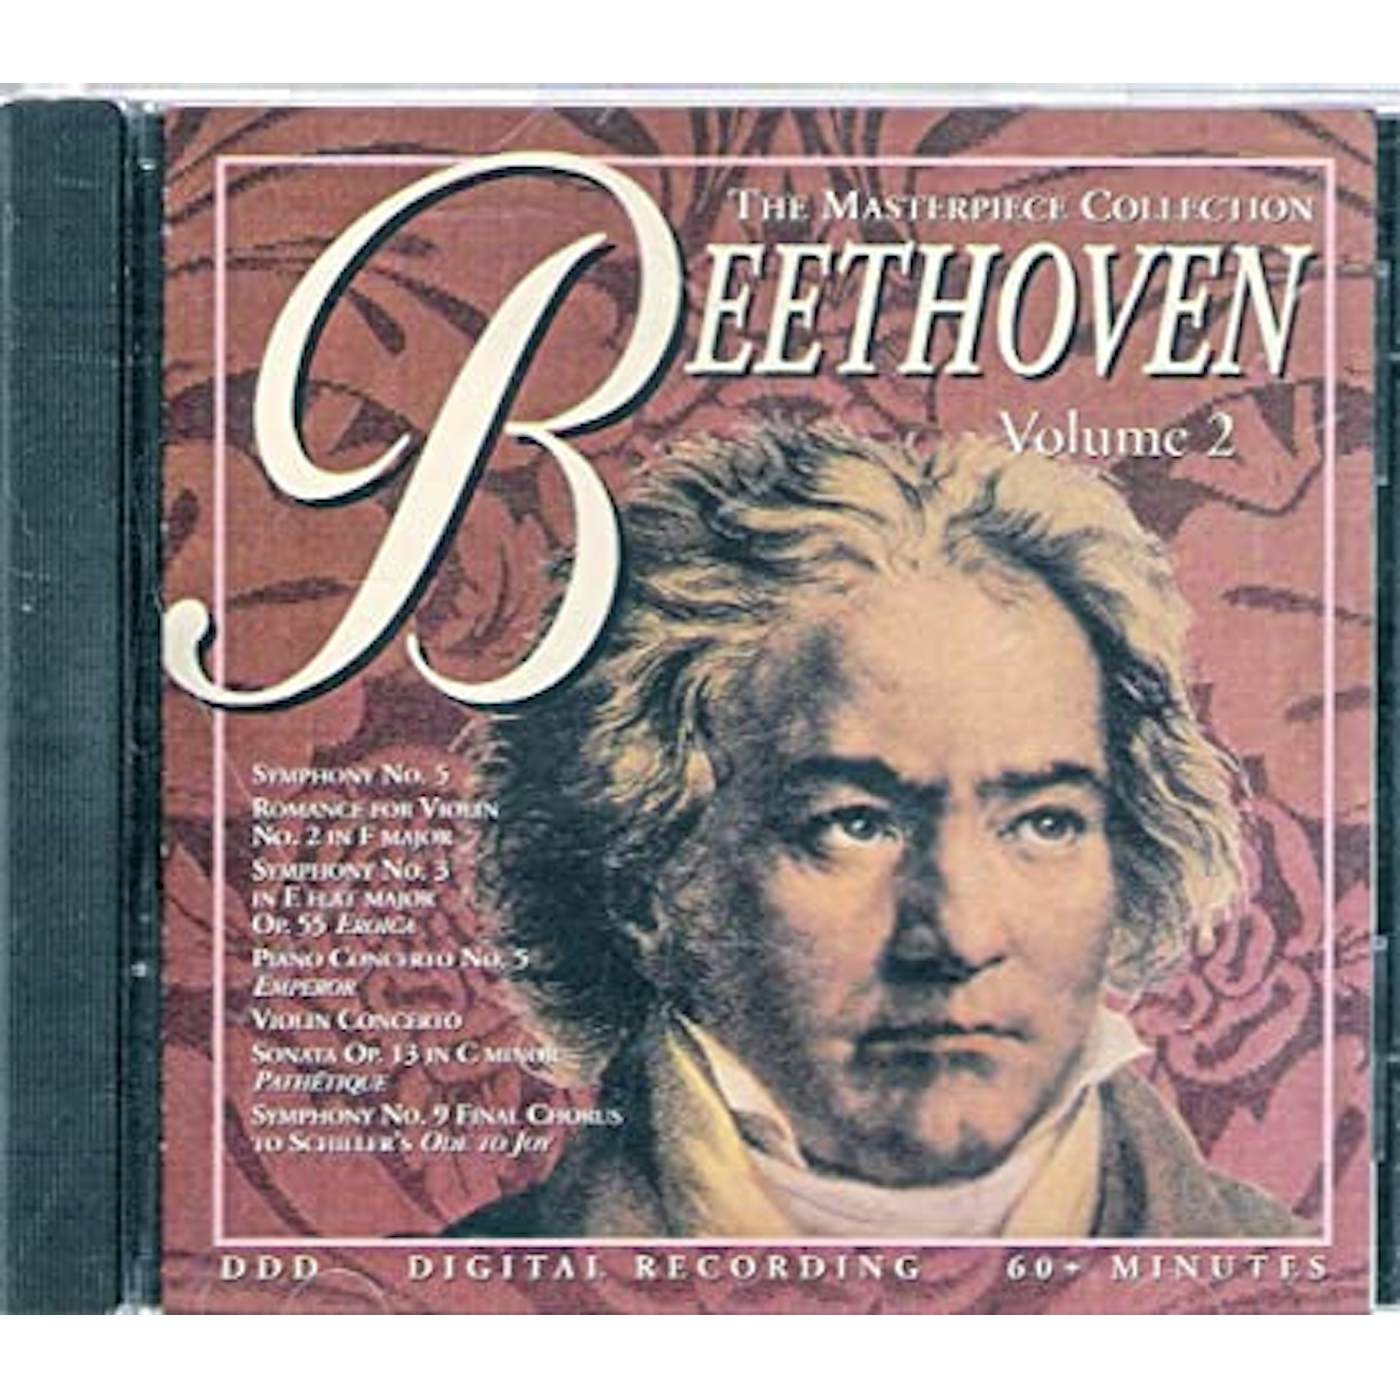 Ludwig van Beethoven 30 OF THE BEST CD